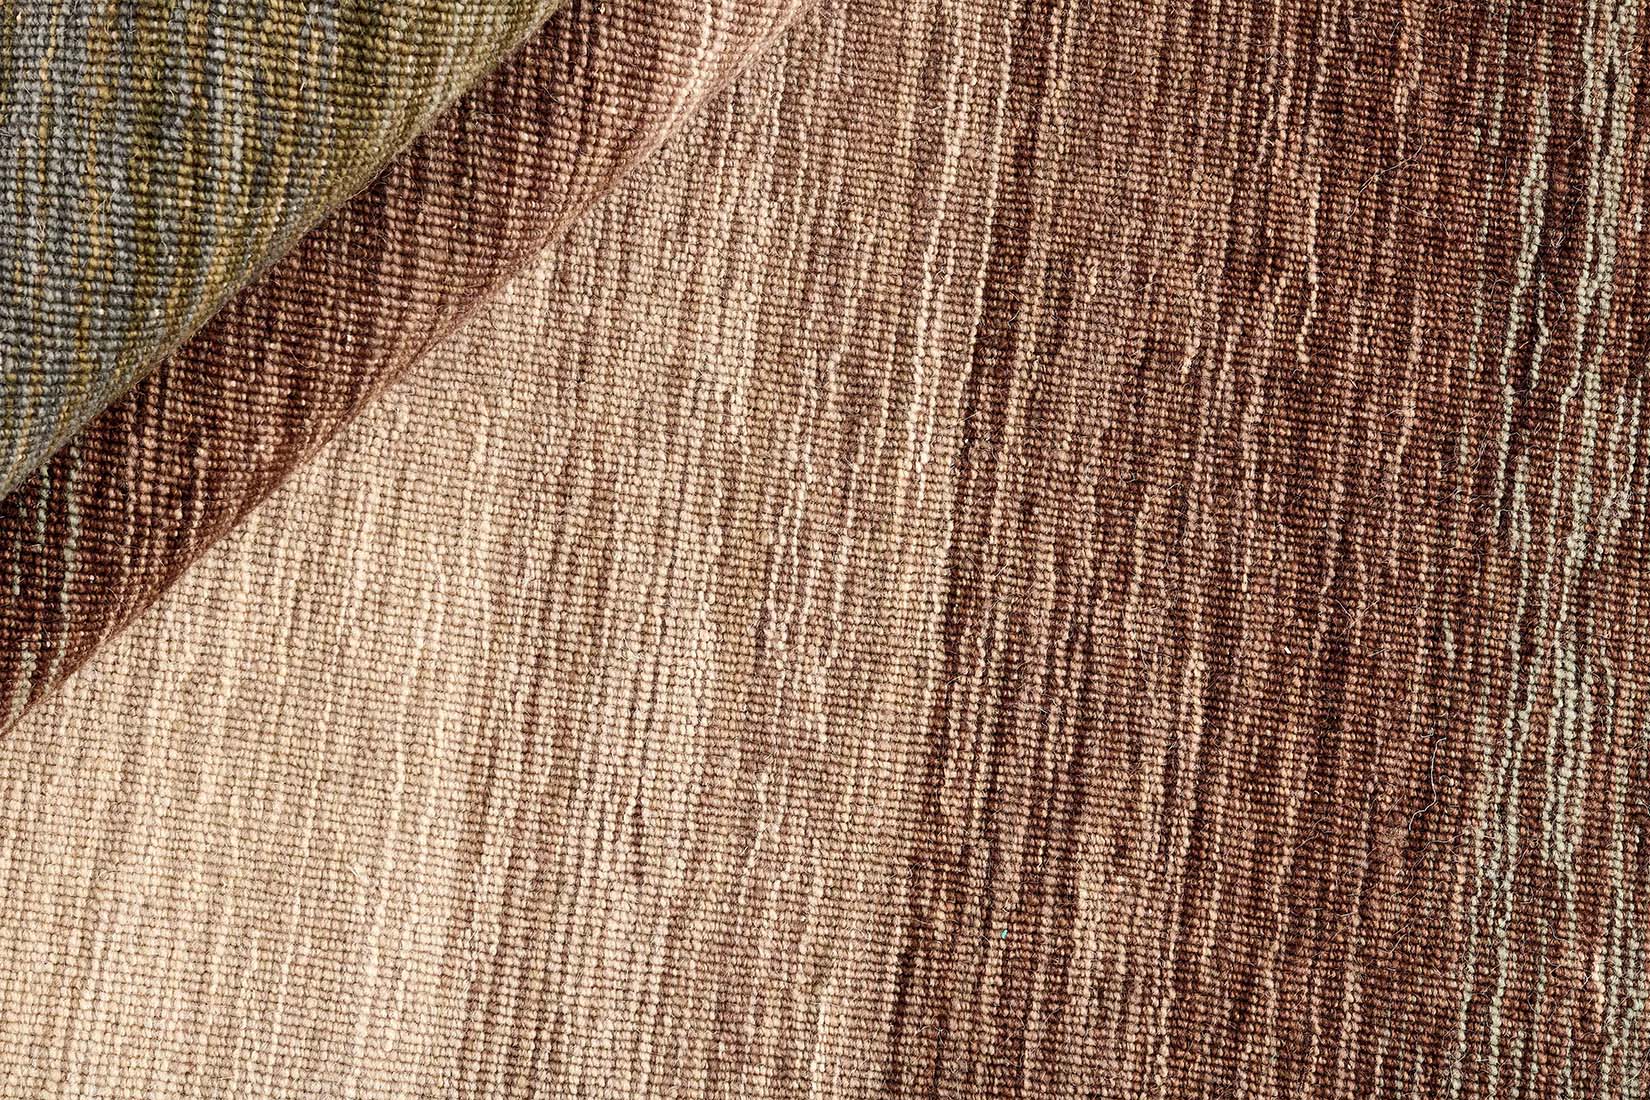  brown and cream ombre flatweave kelim rug
